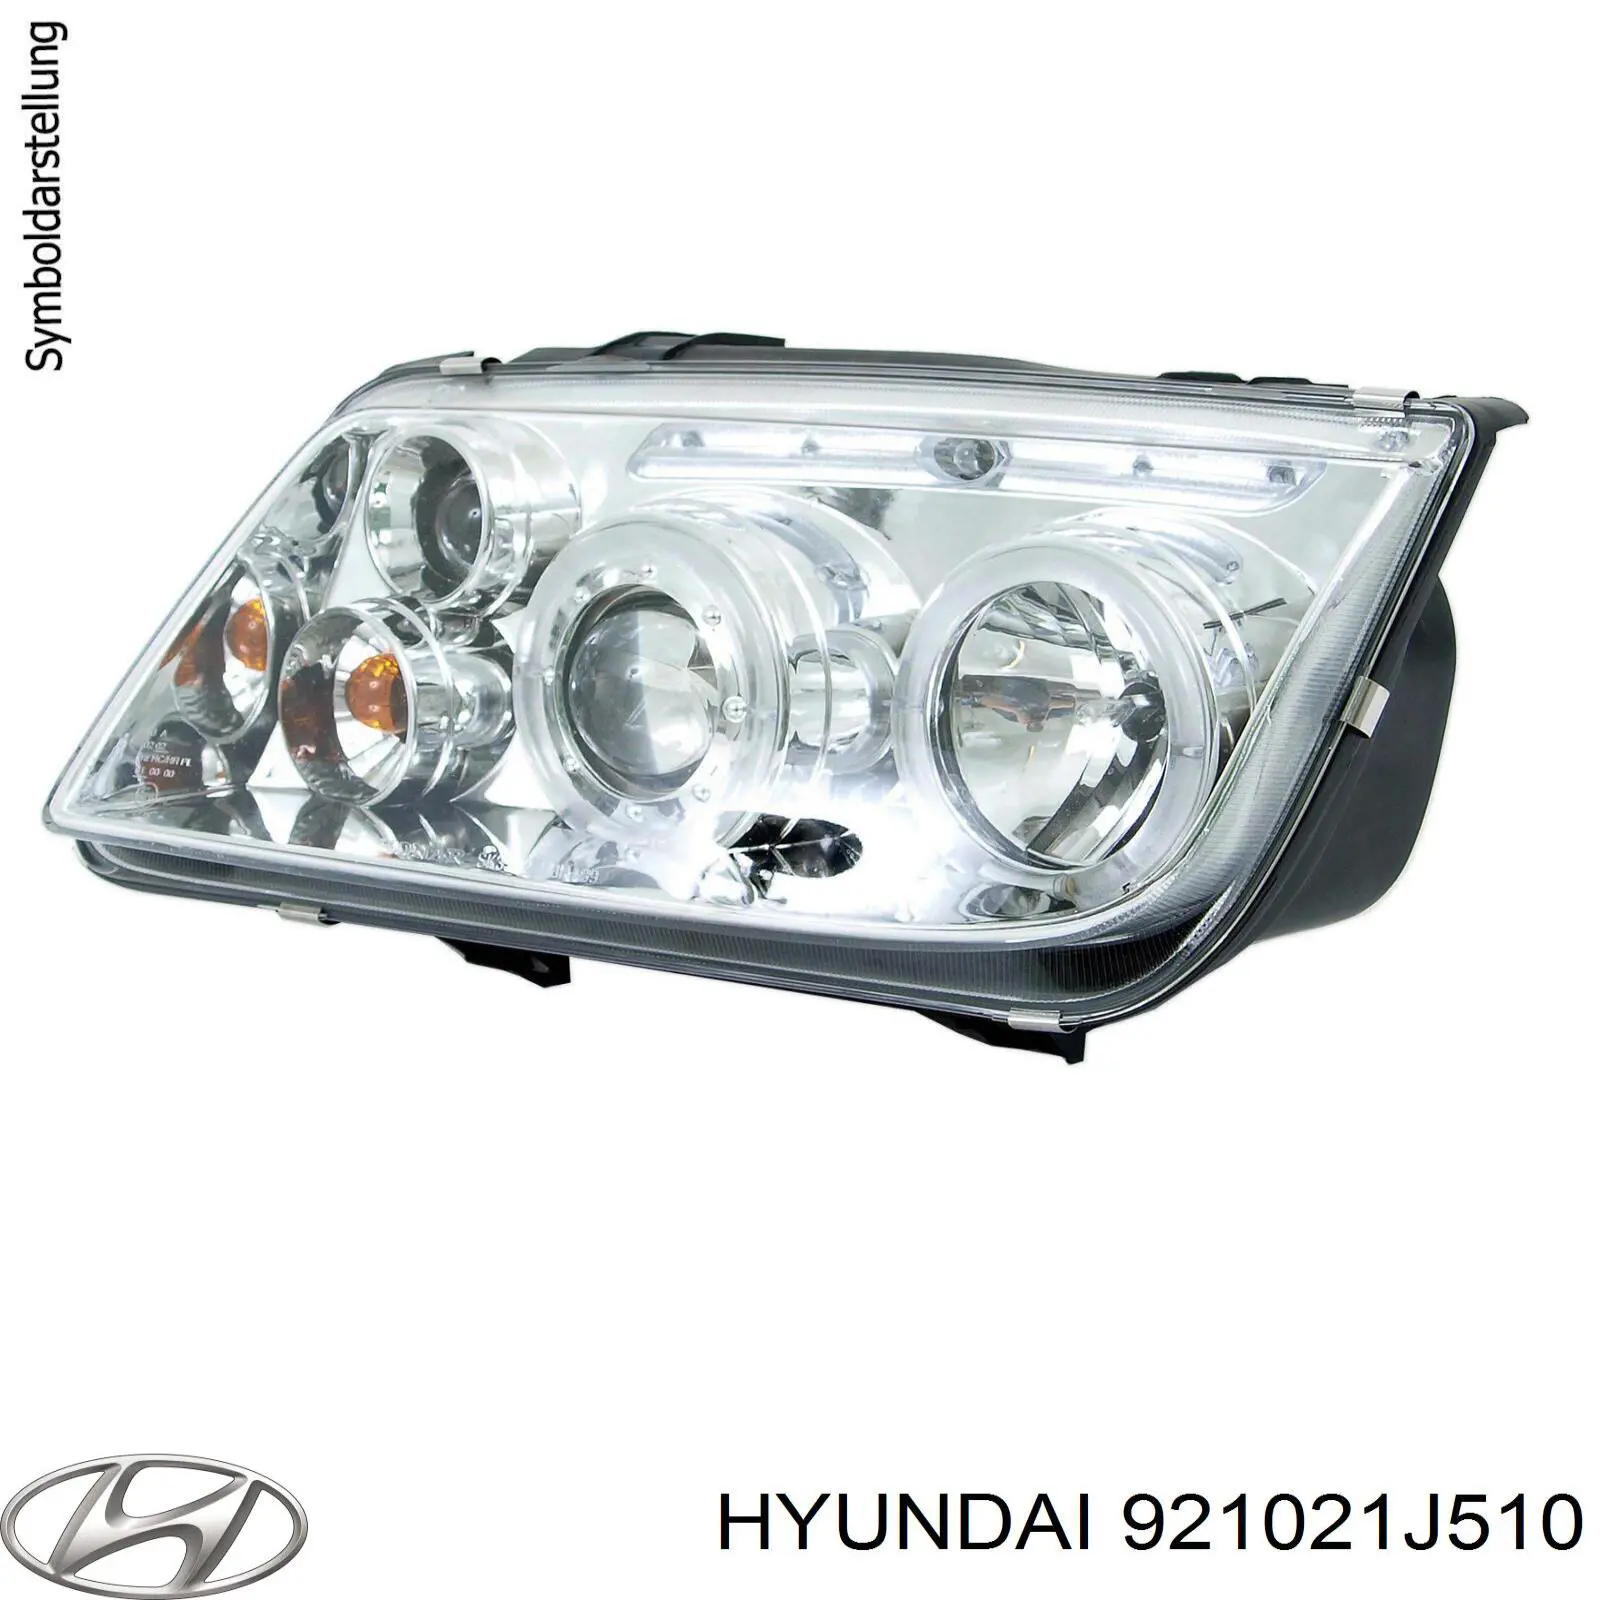 921021J510 Hyundai/Kia faro derecho